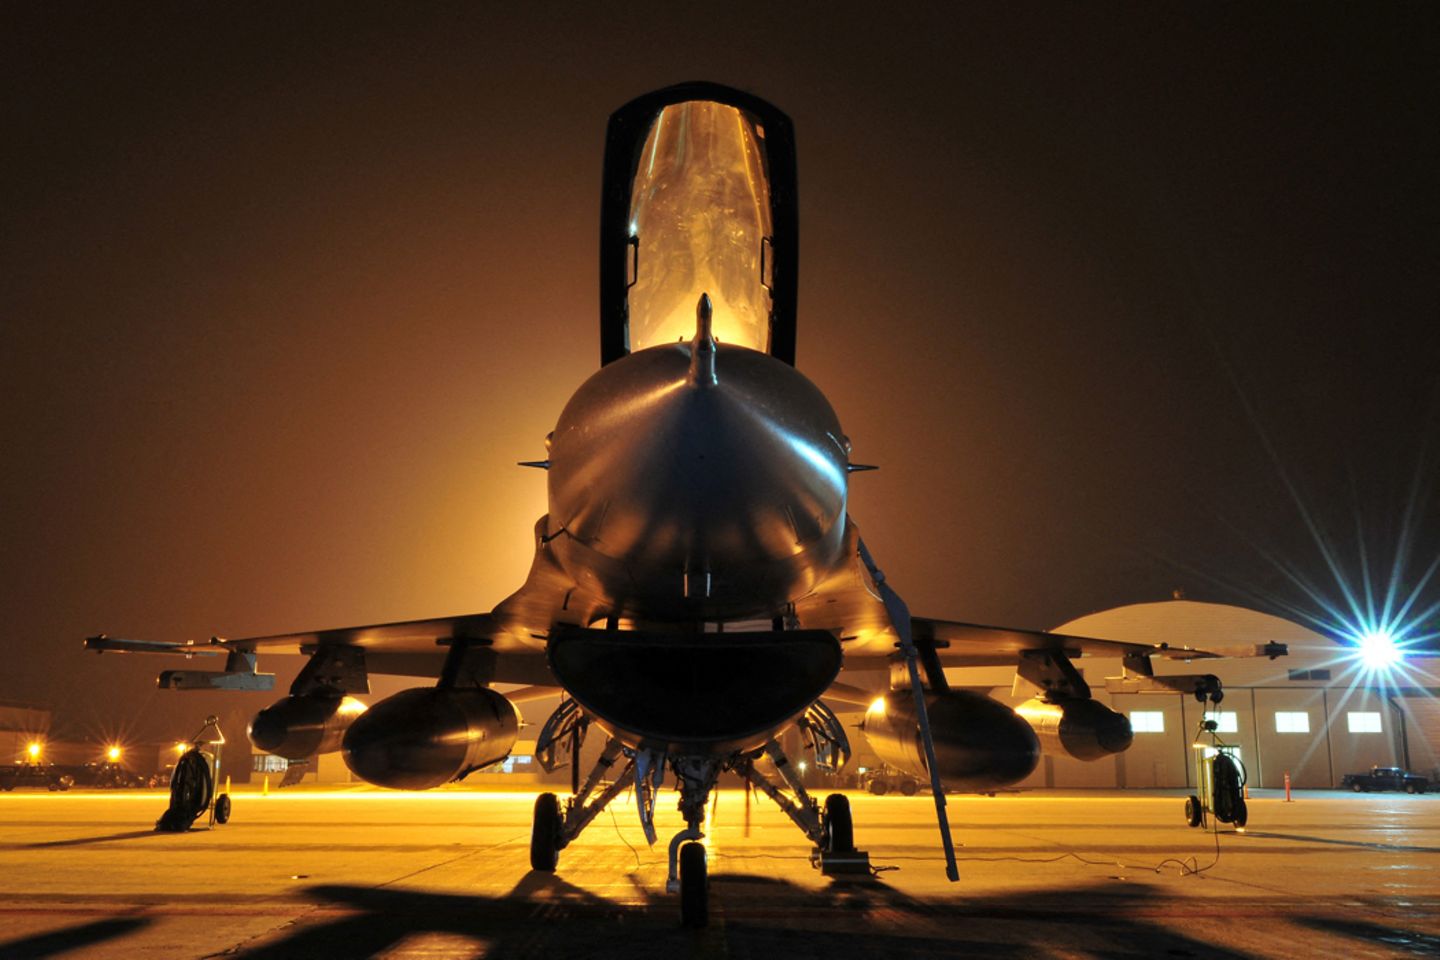 F-16 der USA - das Kampflugzeug stammt aus dem Kalten Krieg, wurde aber kontinuierlich weiter entwickelt.